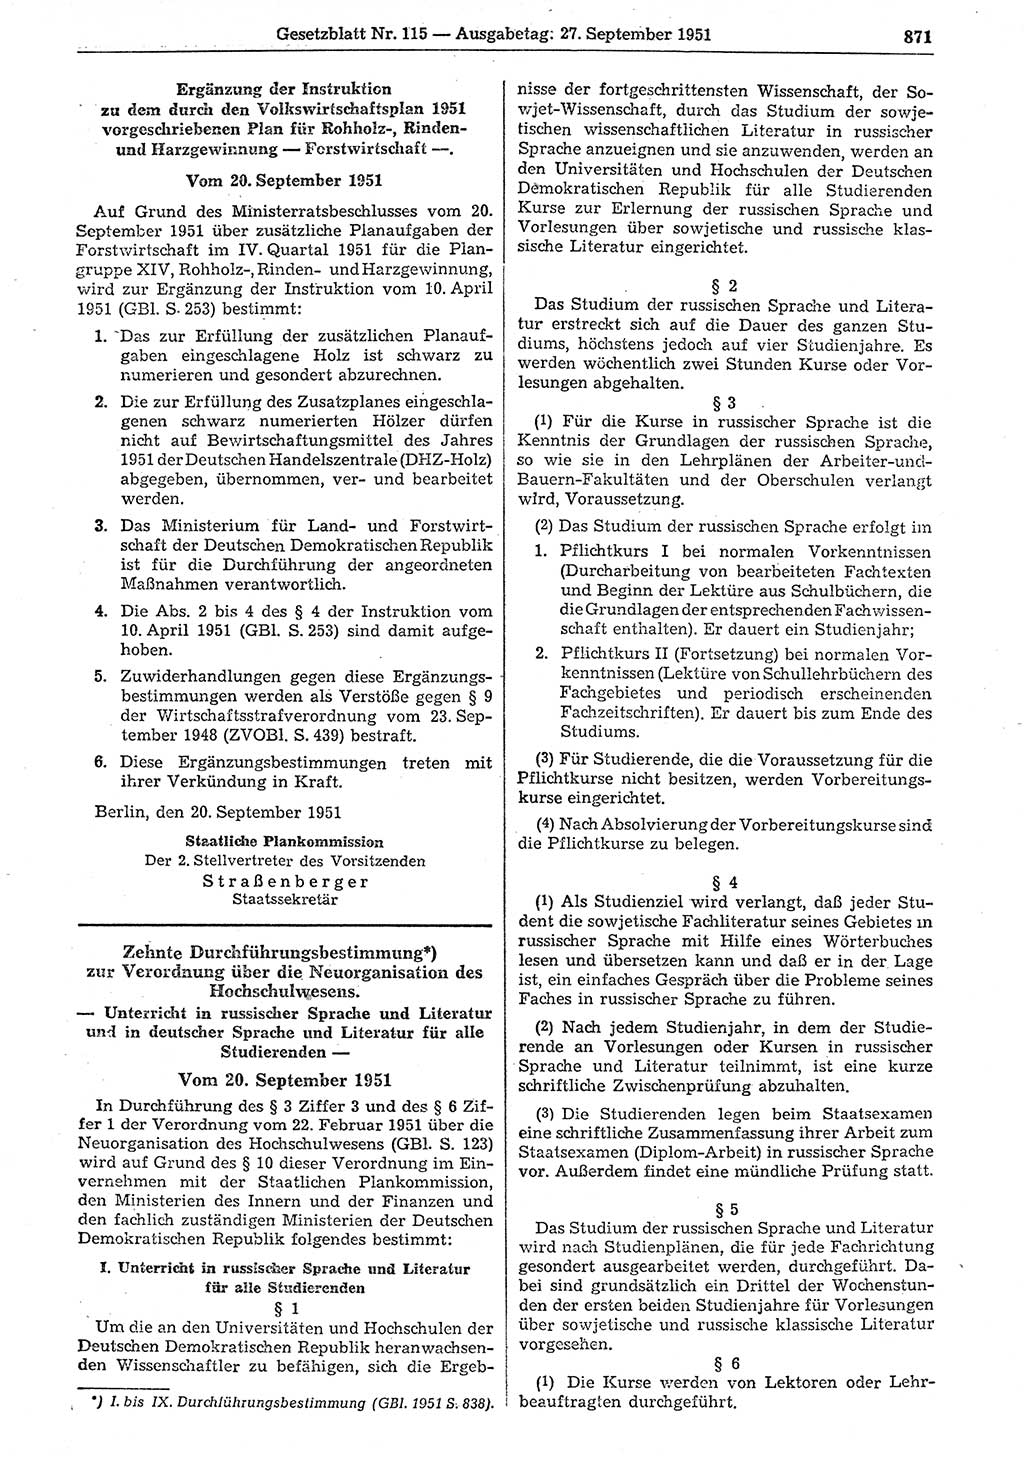 Gesetzblatt (GBl.) der Deutschen Demokratischen Republik (DDR) 1951, Seite 871 (GBl. DDR 1951, S. 871)